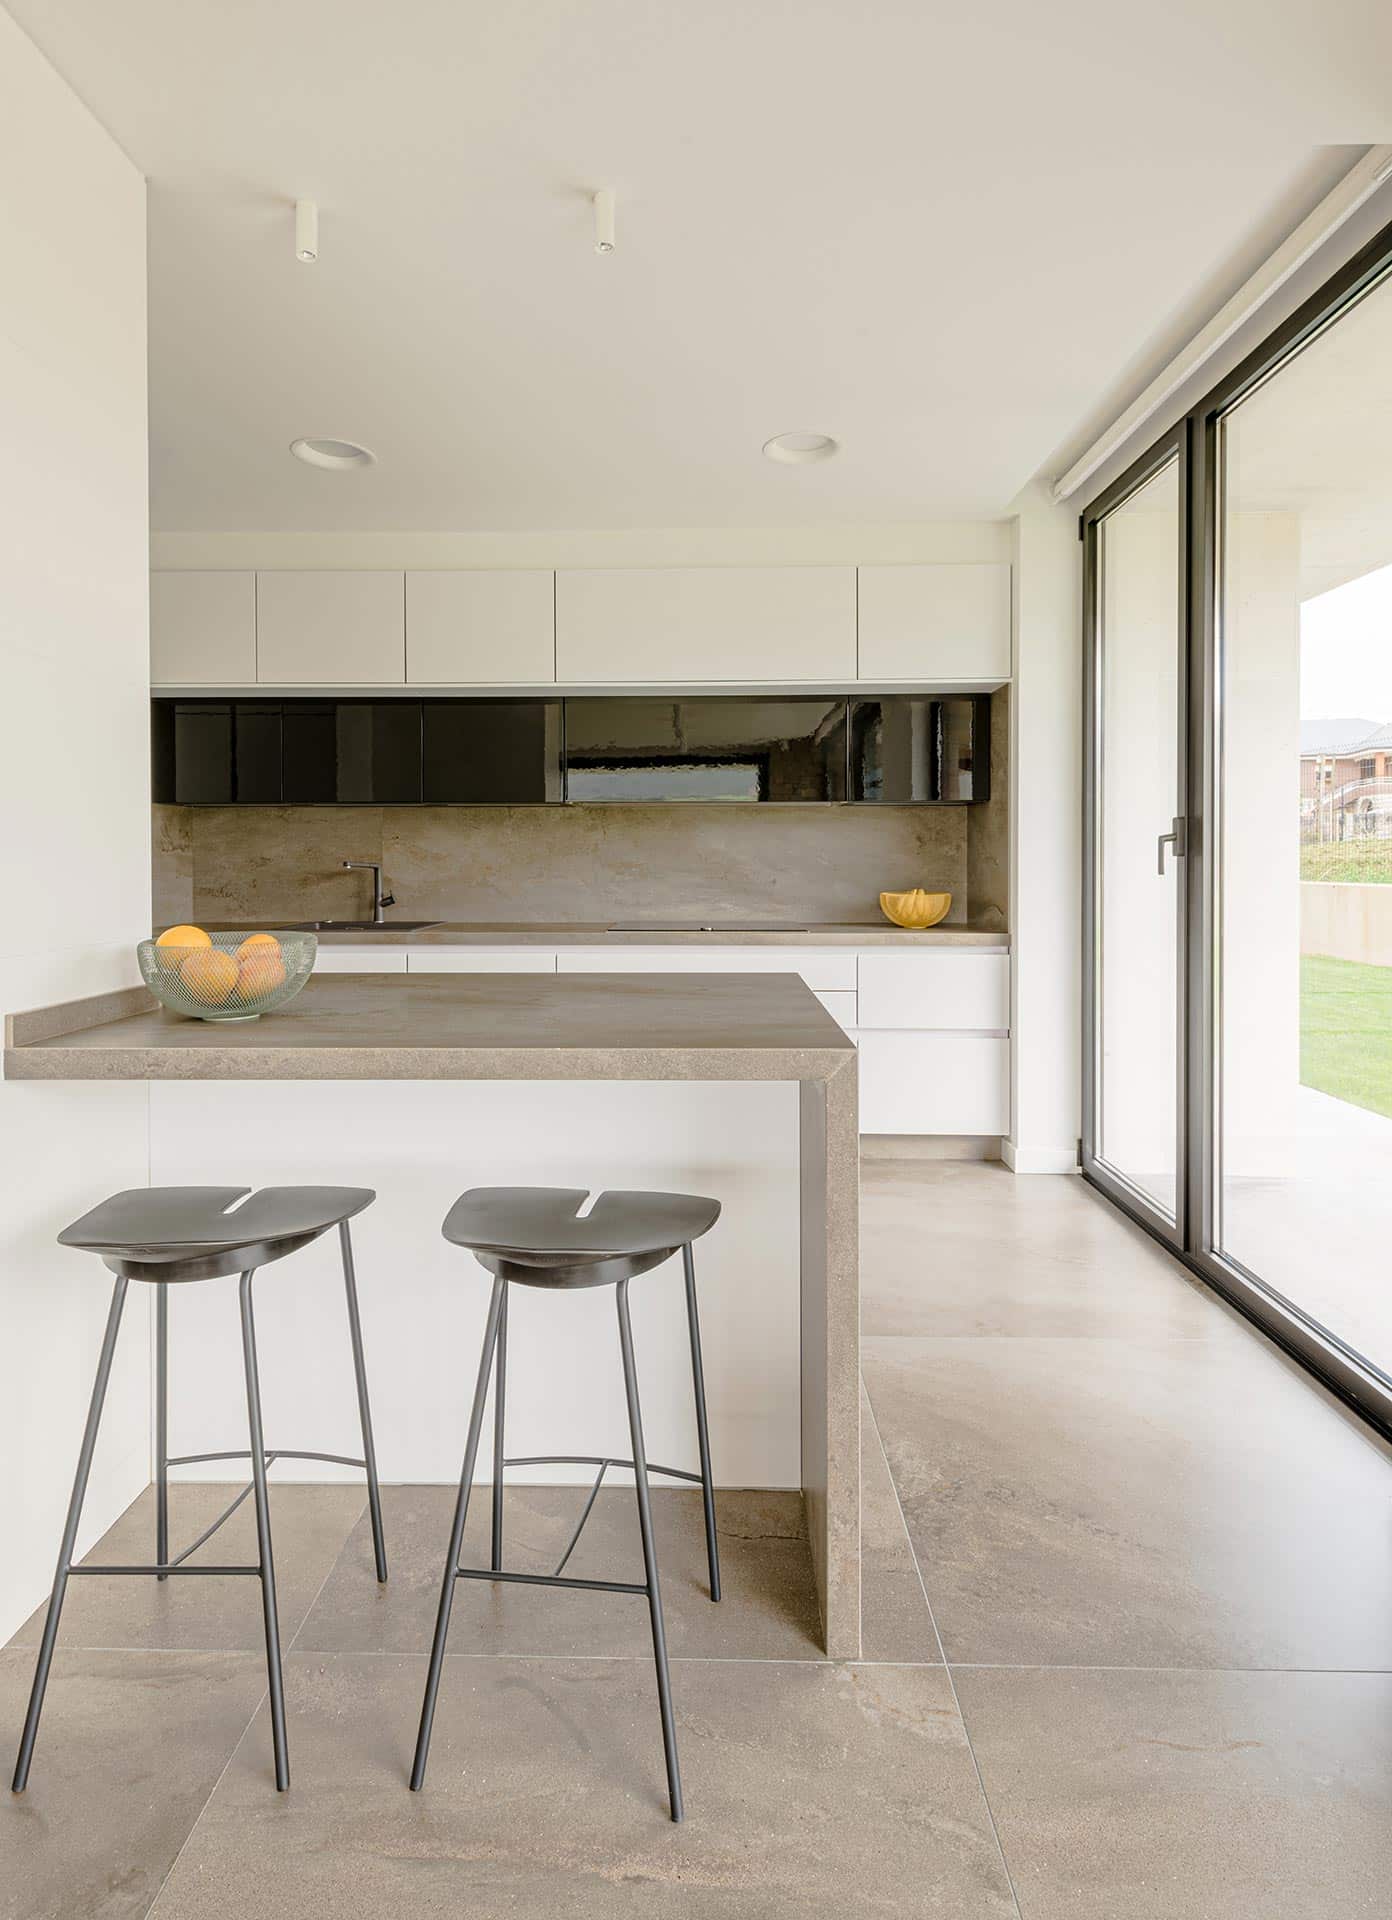 Isla de cocina de casa moderna diseñada por Moah Arquitectos en Pontejos